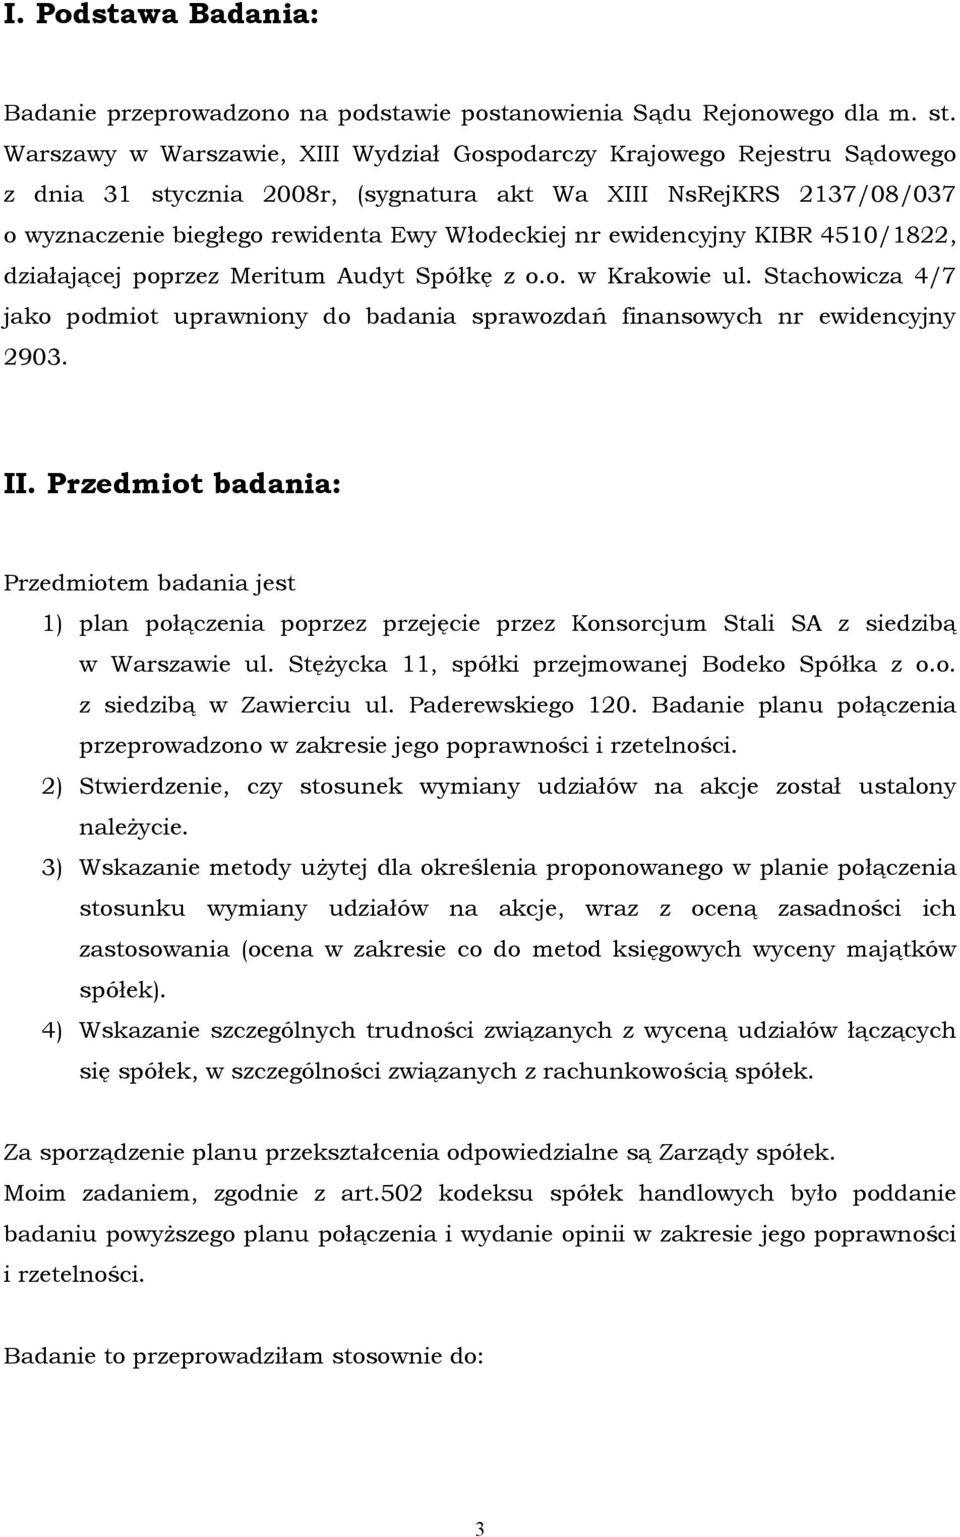 ewidencyjny KIBR 4510/1822, działającej poprzez Meritum Audyt Spółkę z o.o. w Krakowie ul. Stachowicza 4/7 jako podmiot uprawniony do badania sprawozdań finansowych nr ewidencyjny 2903. II.